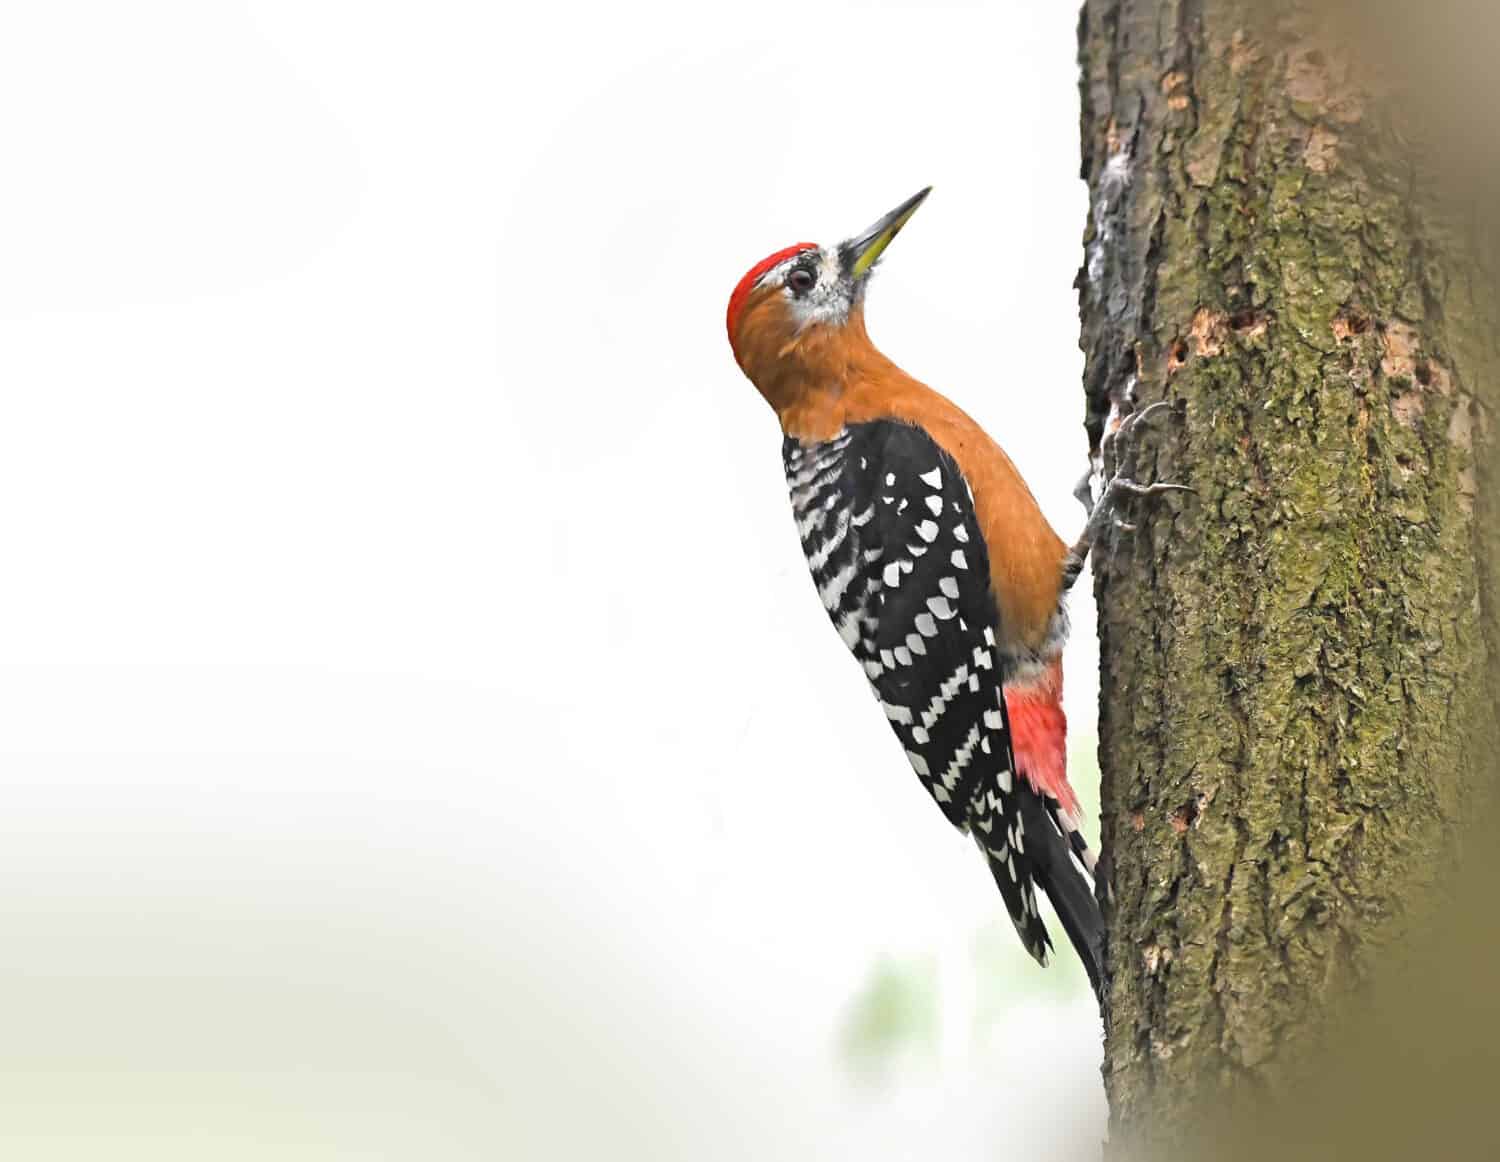 Rufous-bellied Woodpecker foraging on tree trunk